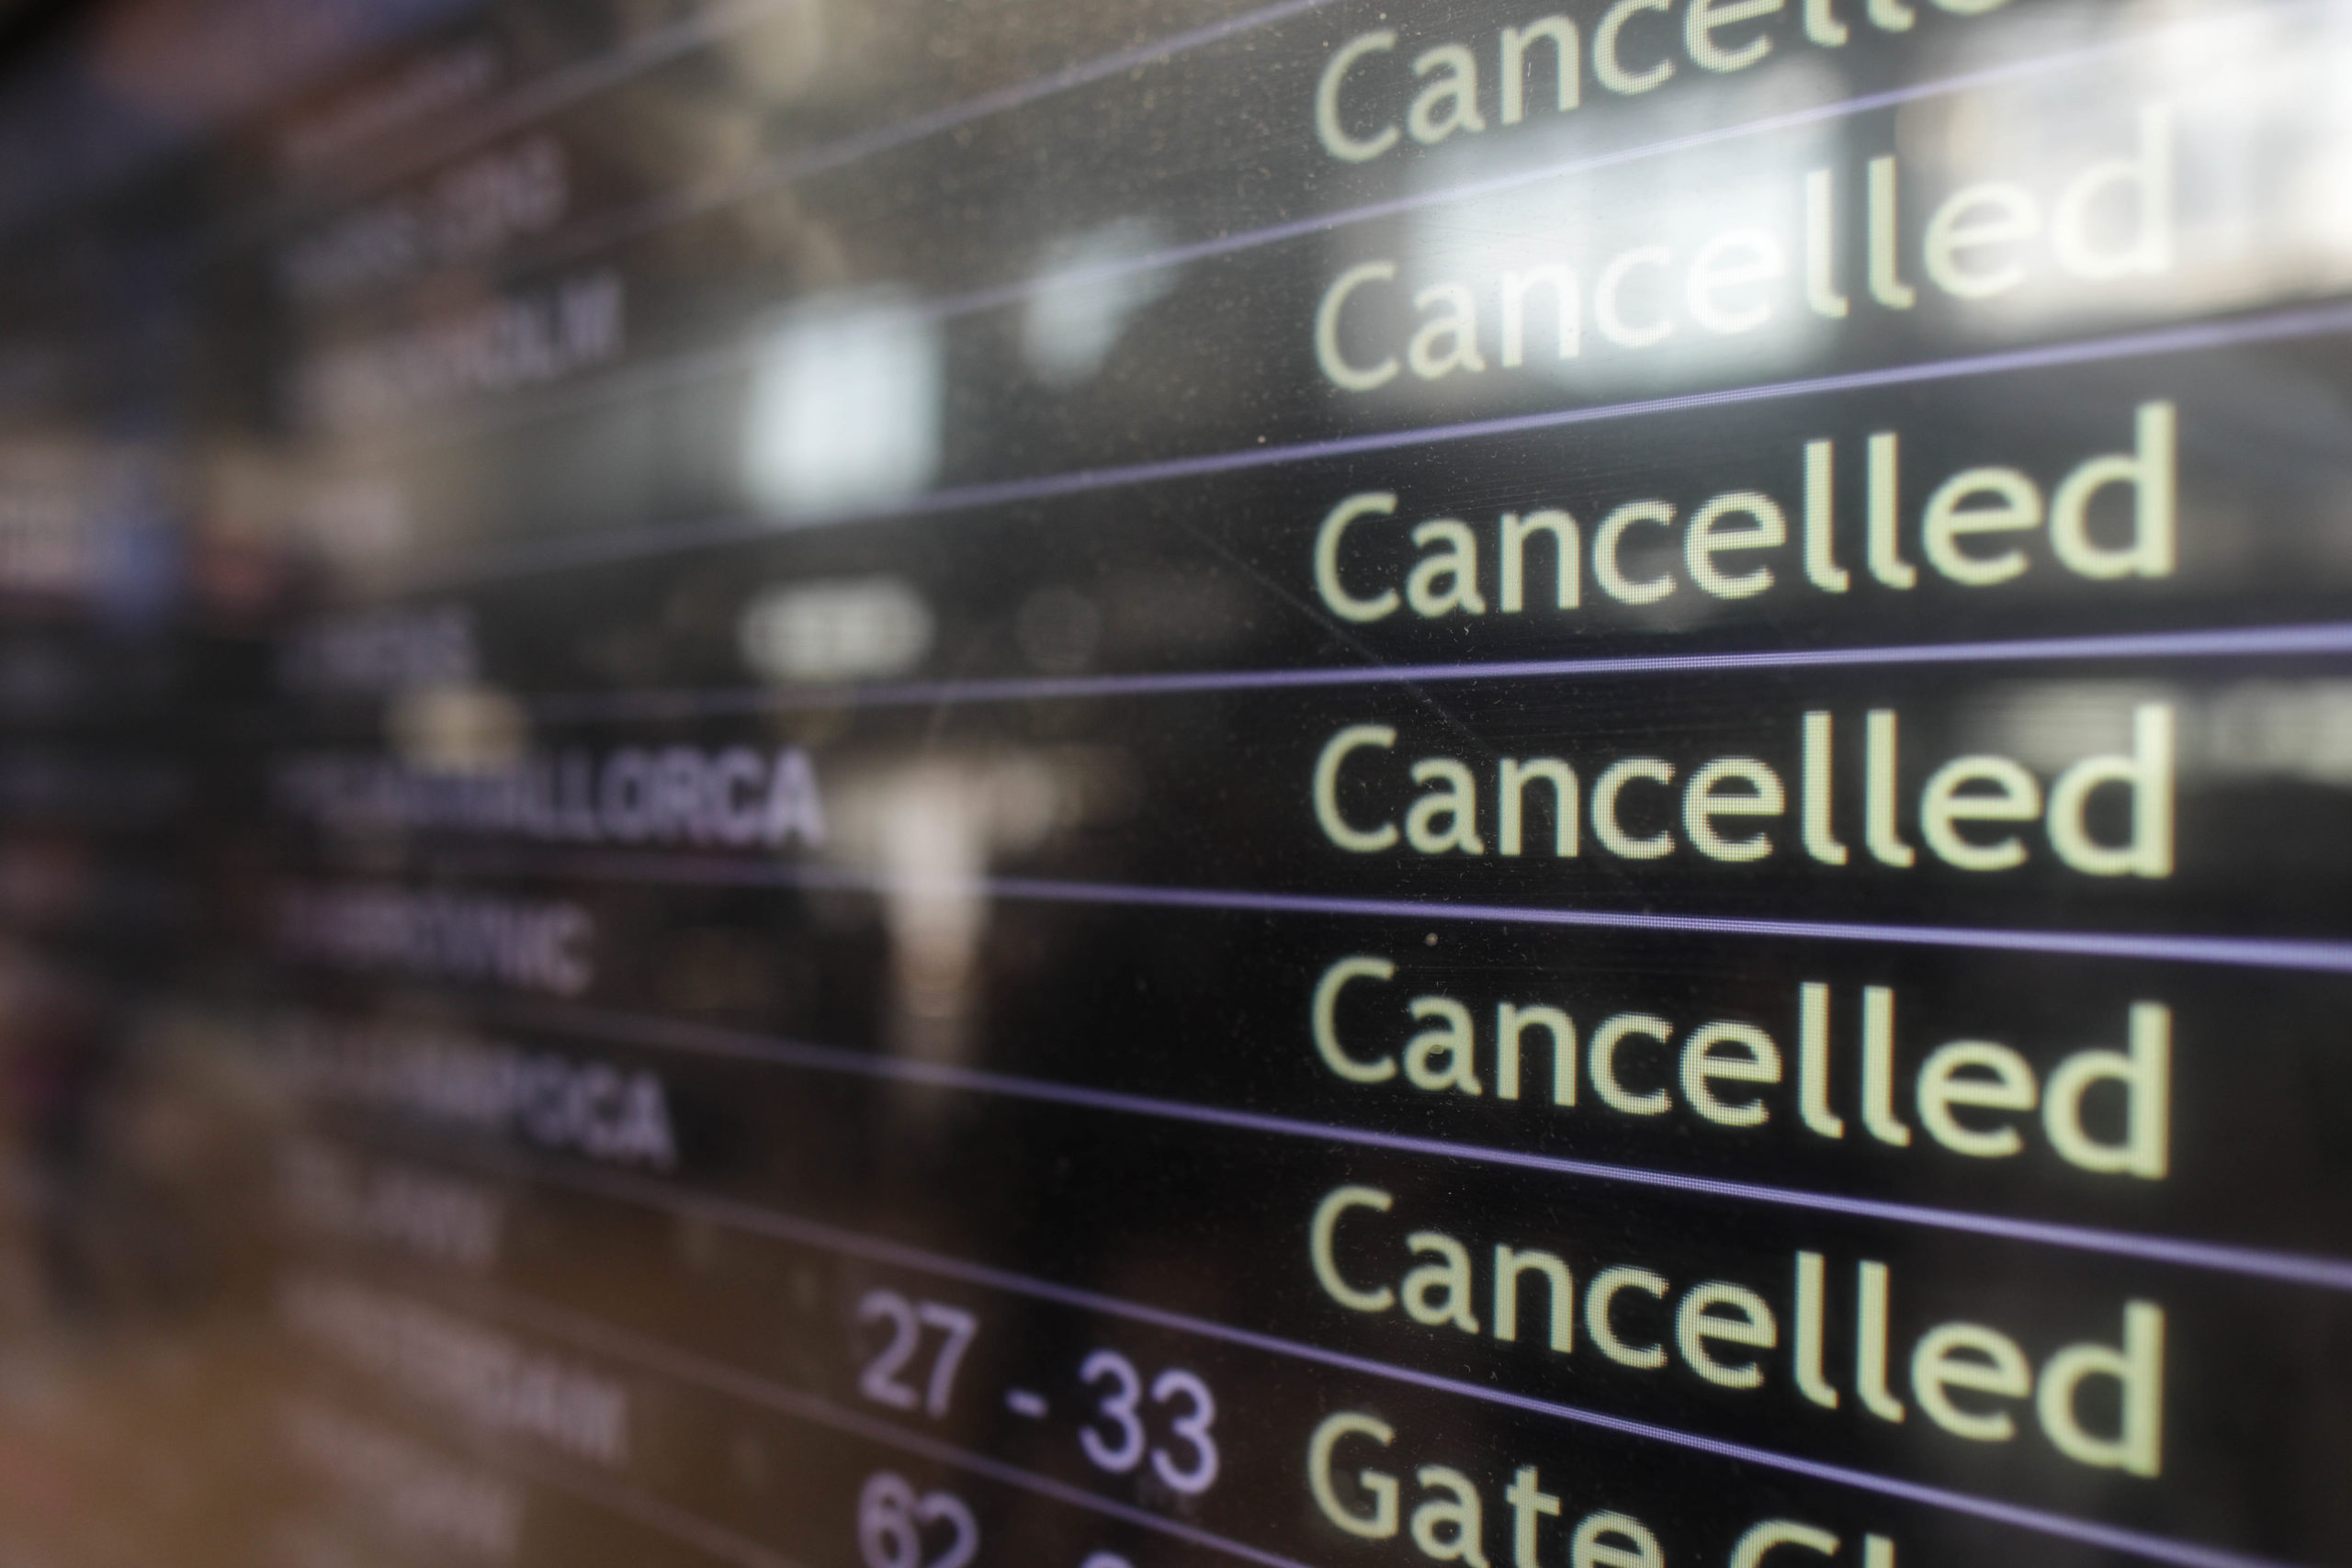 Suspendarea zborurilor Blue Air – 14 zboruri anulate pe Aeroportul Otopeni, iar pentru 7 dintre ele pasagerii realizaseră toate formalităţile şi urmau să urce în avion – FOTO